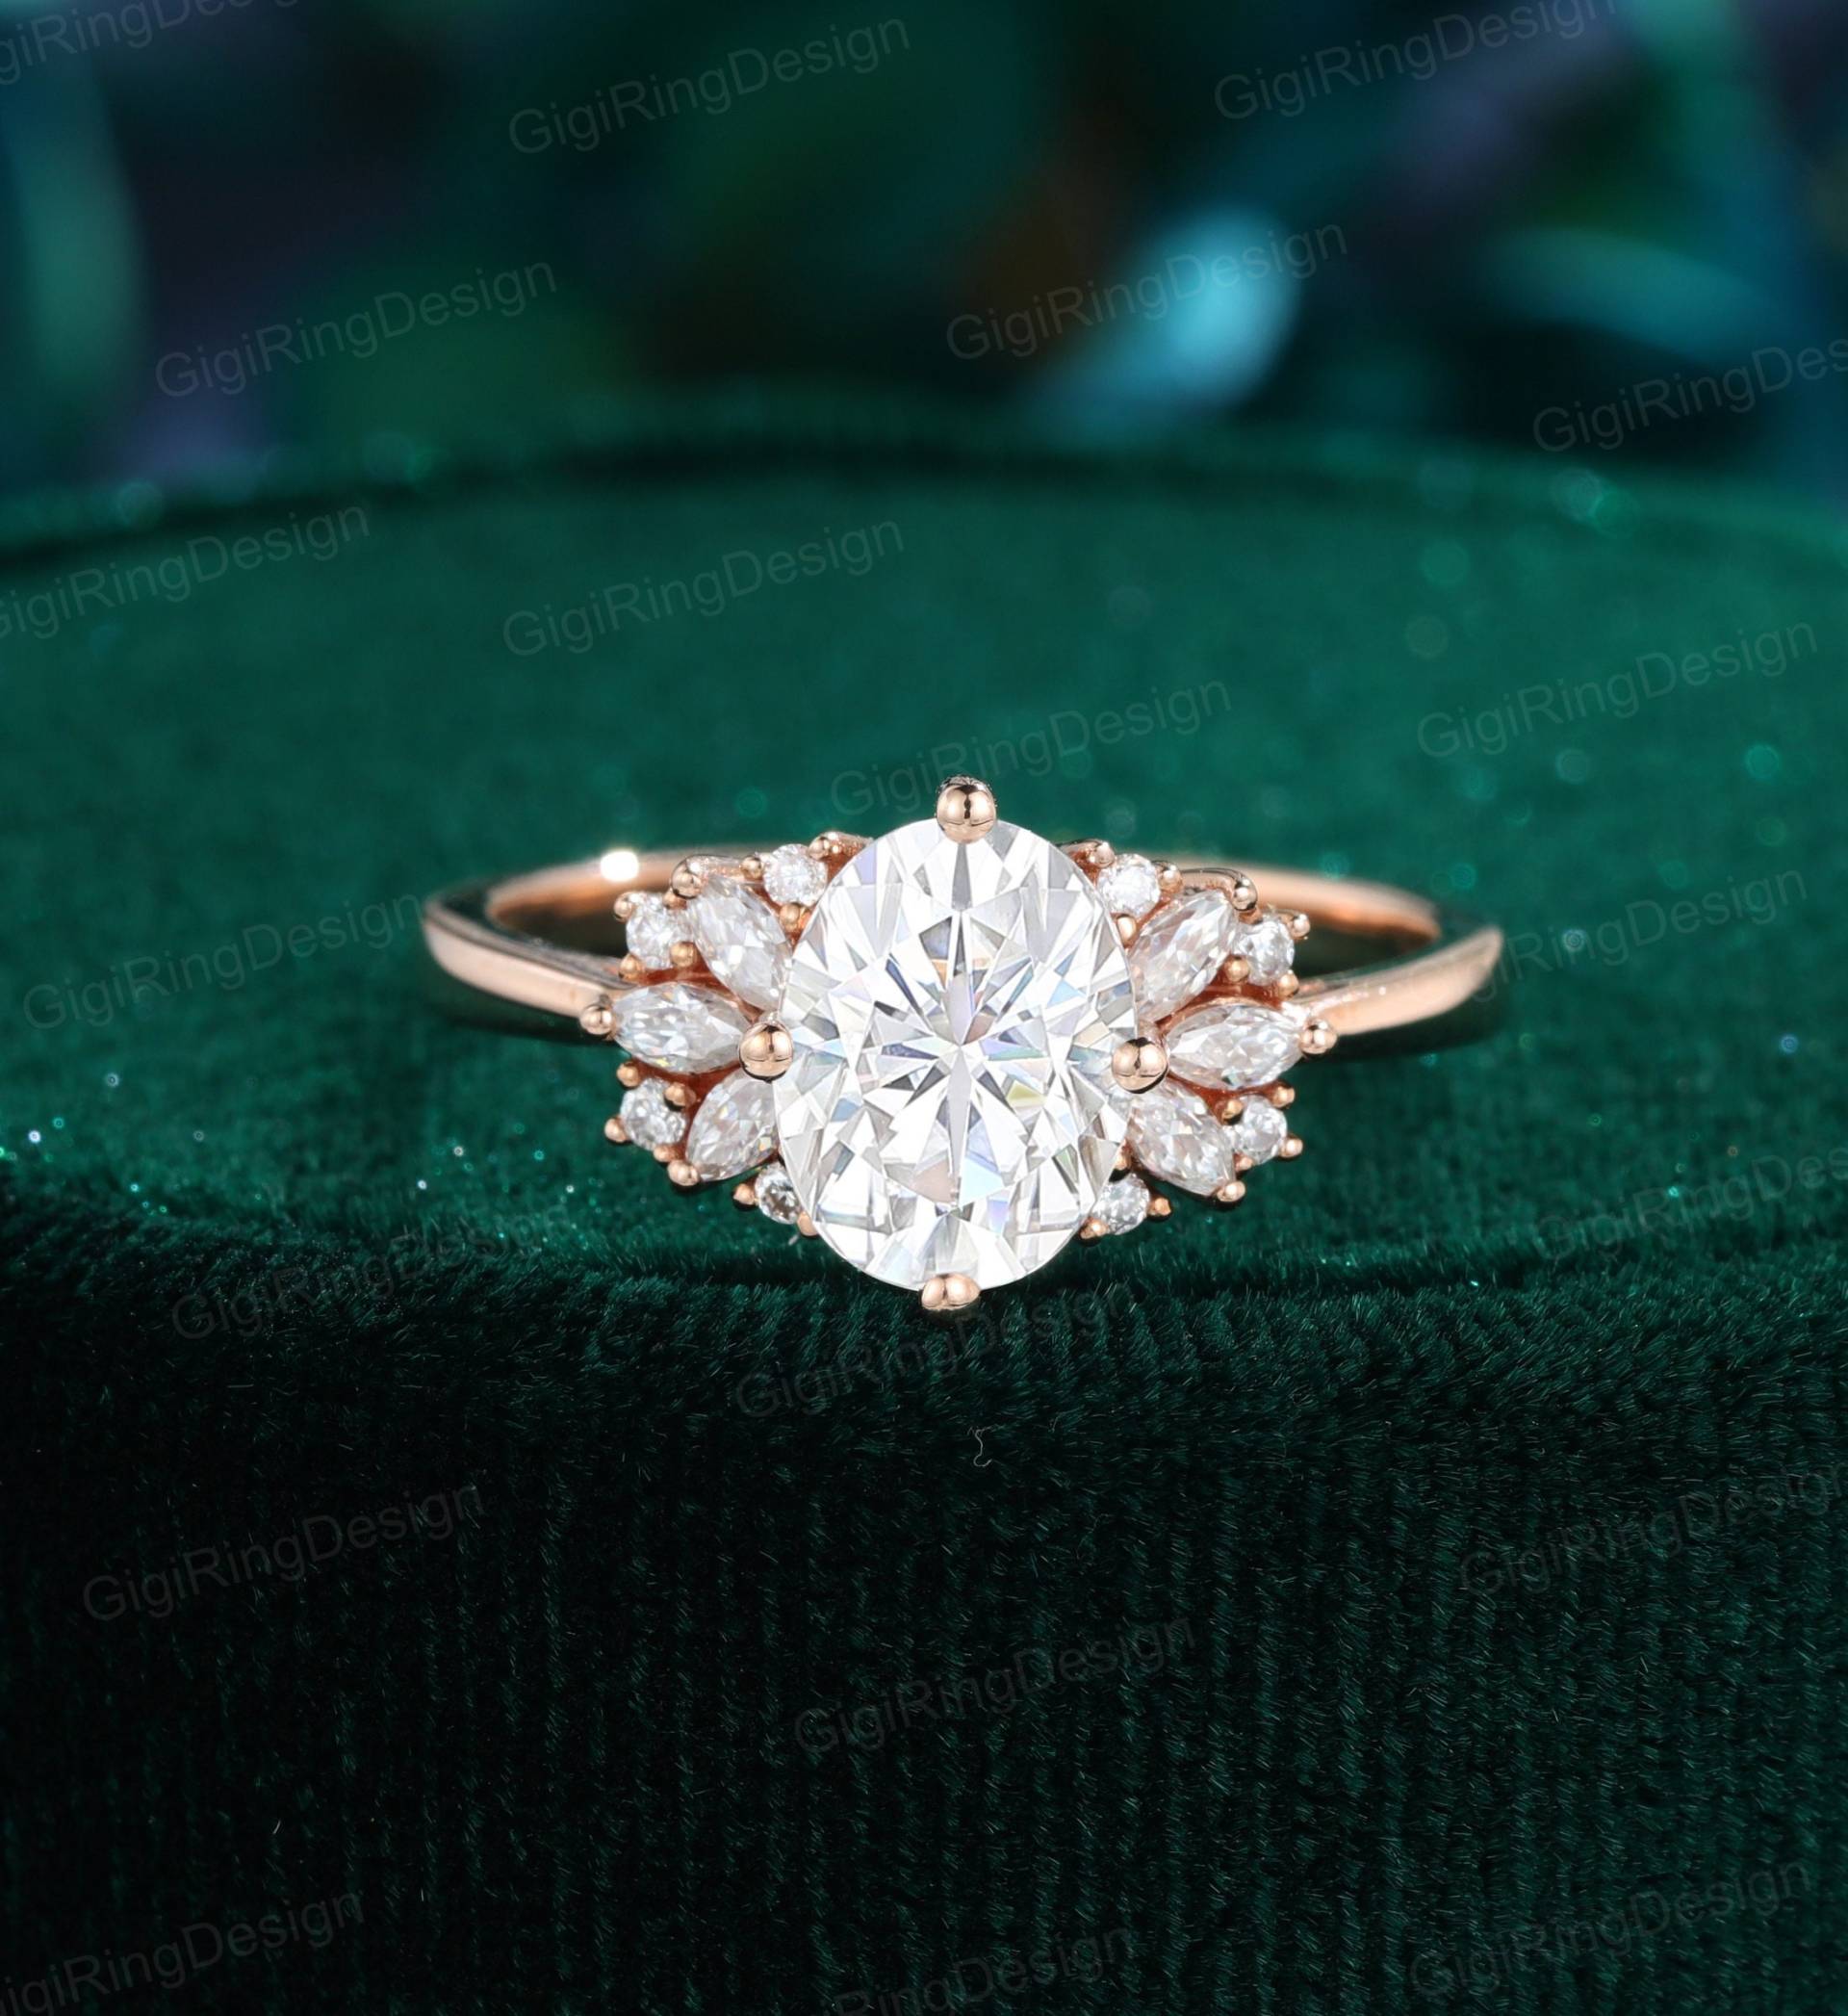 Oval Geschliffener Moissanit Verlobungsring Vintage Rosegold Art Deco Marquise Braut Versprechen Jubiläum von GigiRingDesign